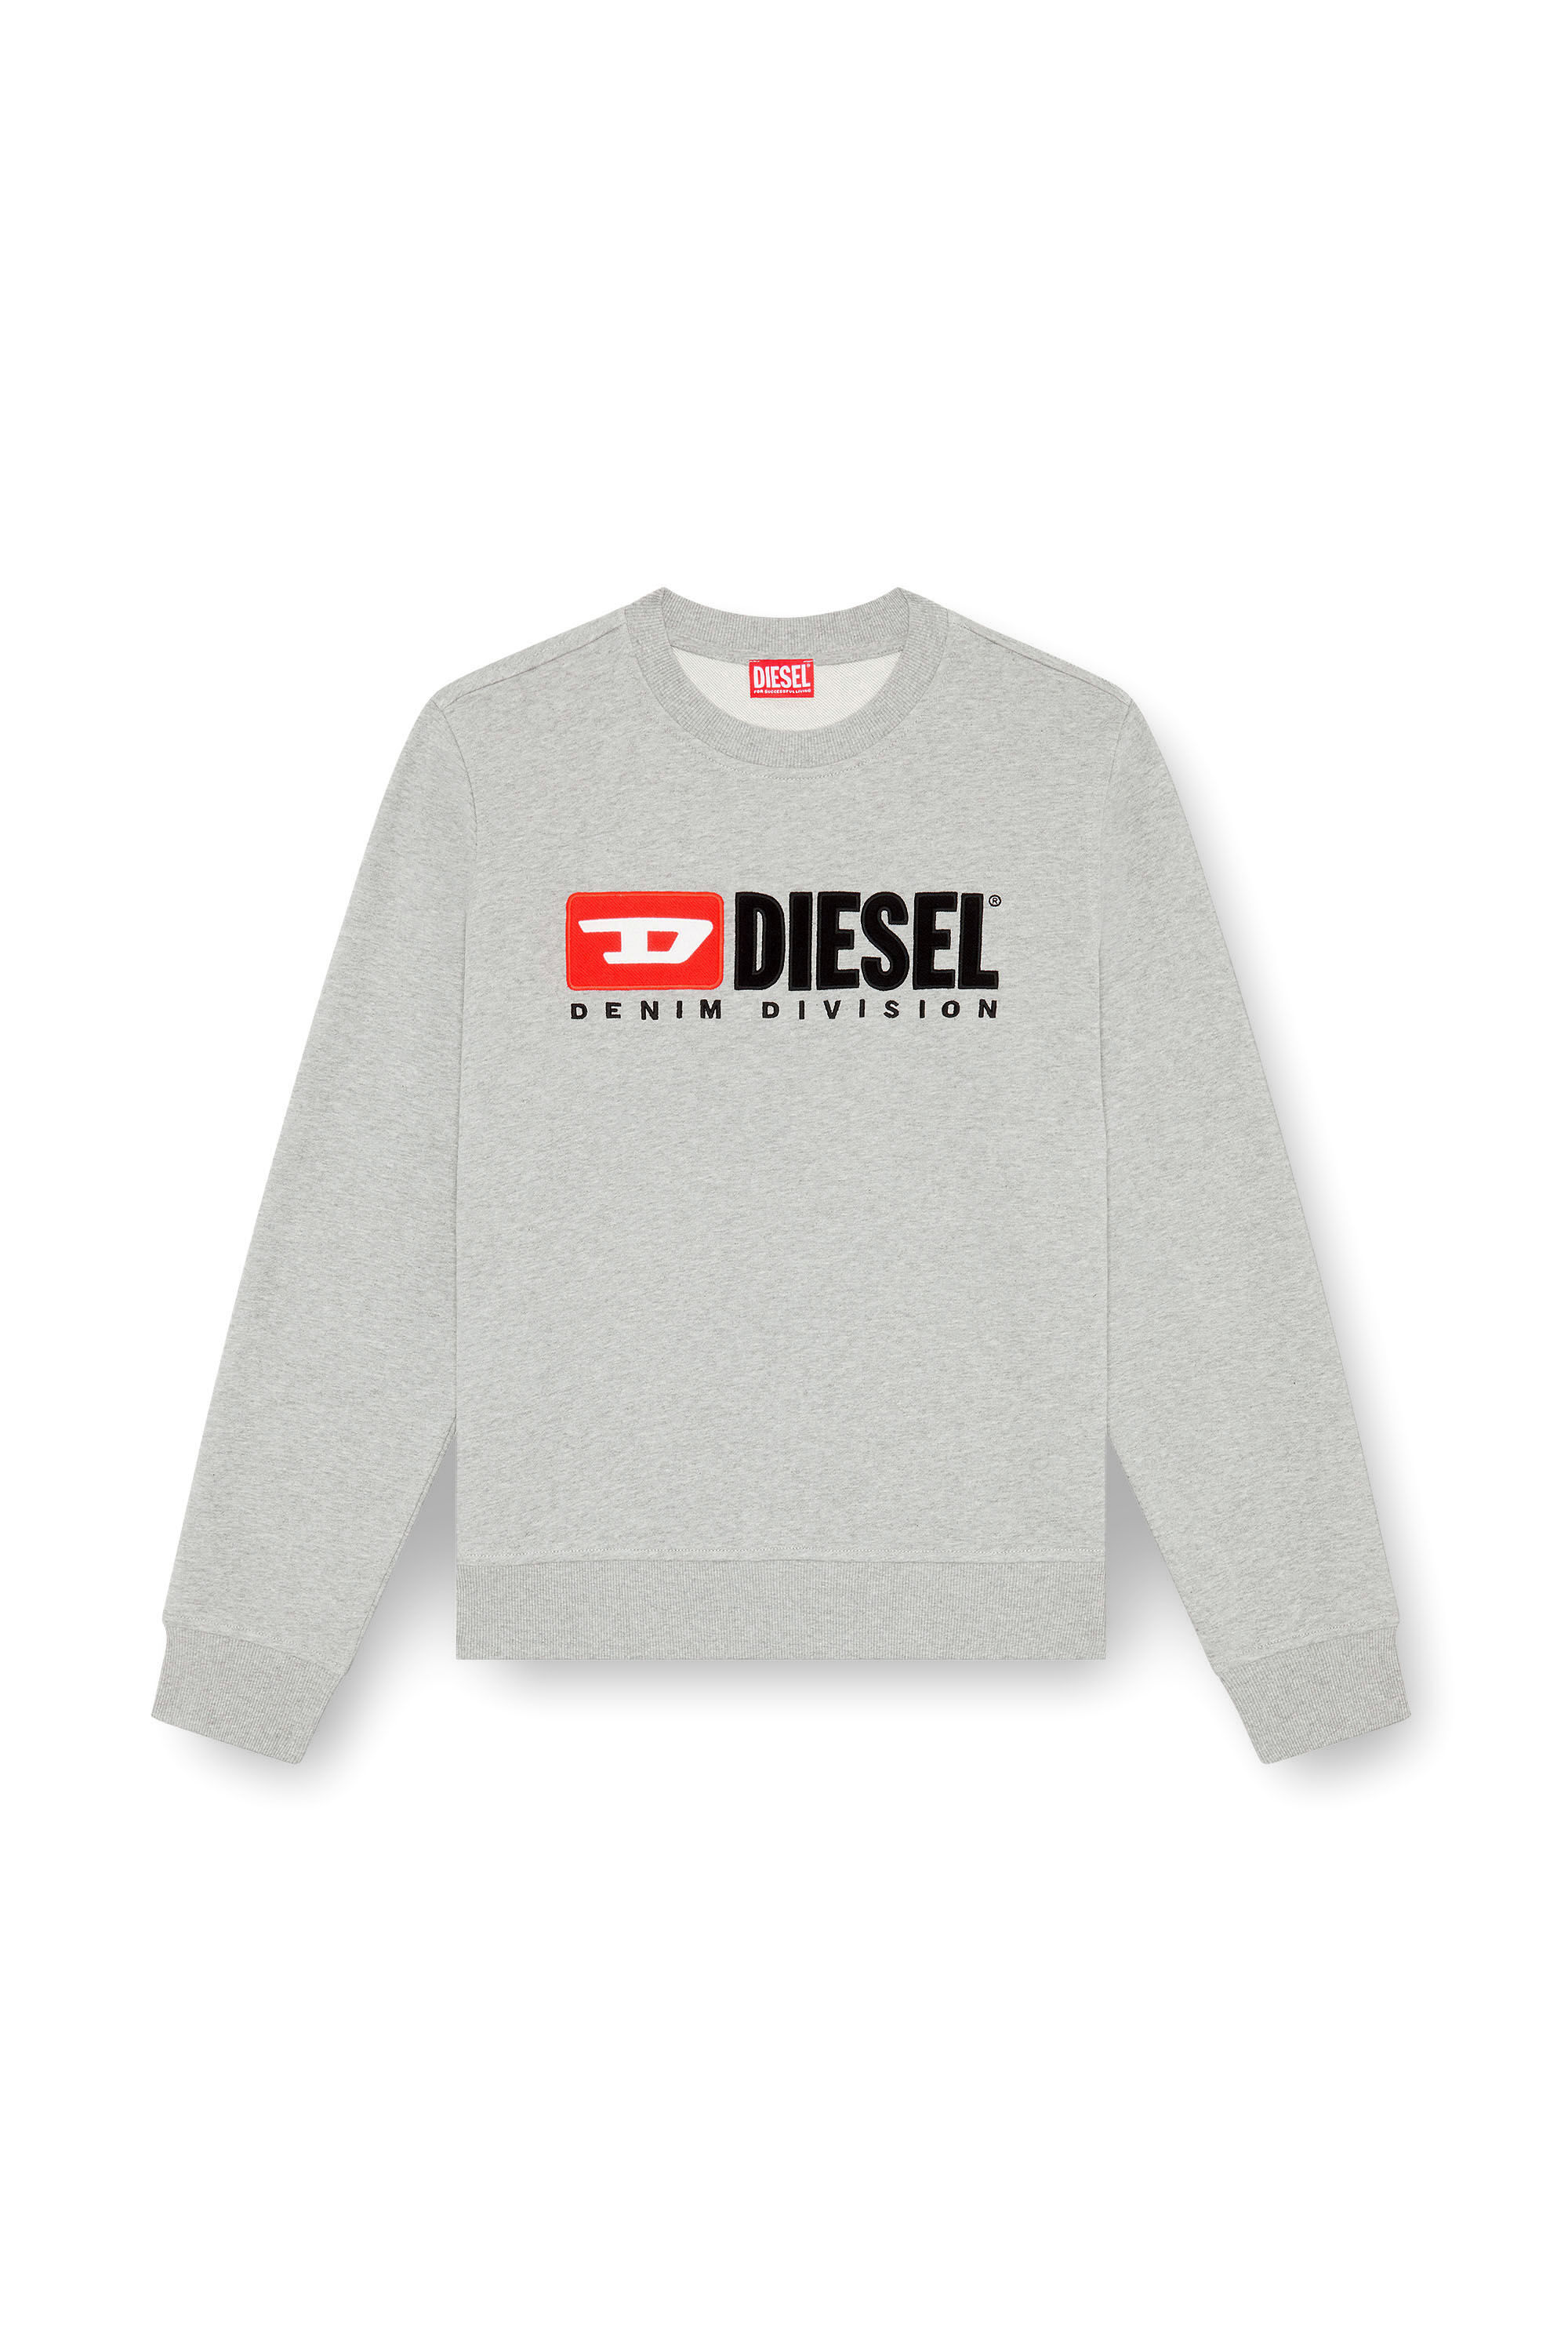 Diesel - S-BOXT-DIV, Herren Sweatshirt mit Denim Division-Logo in Grau - Image 2